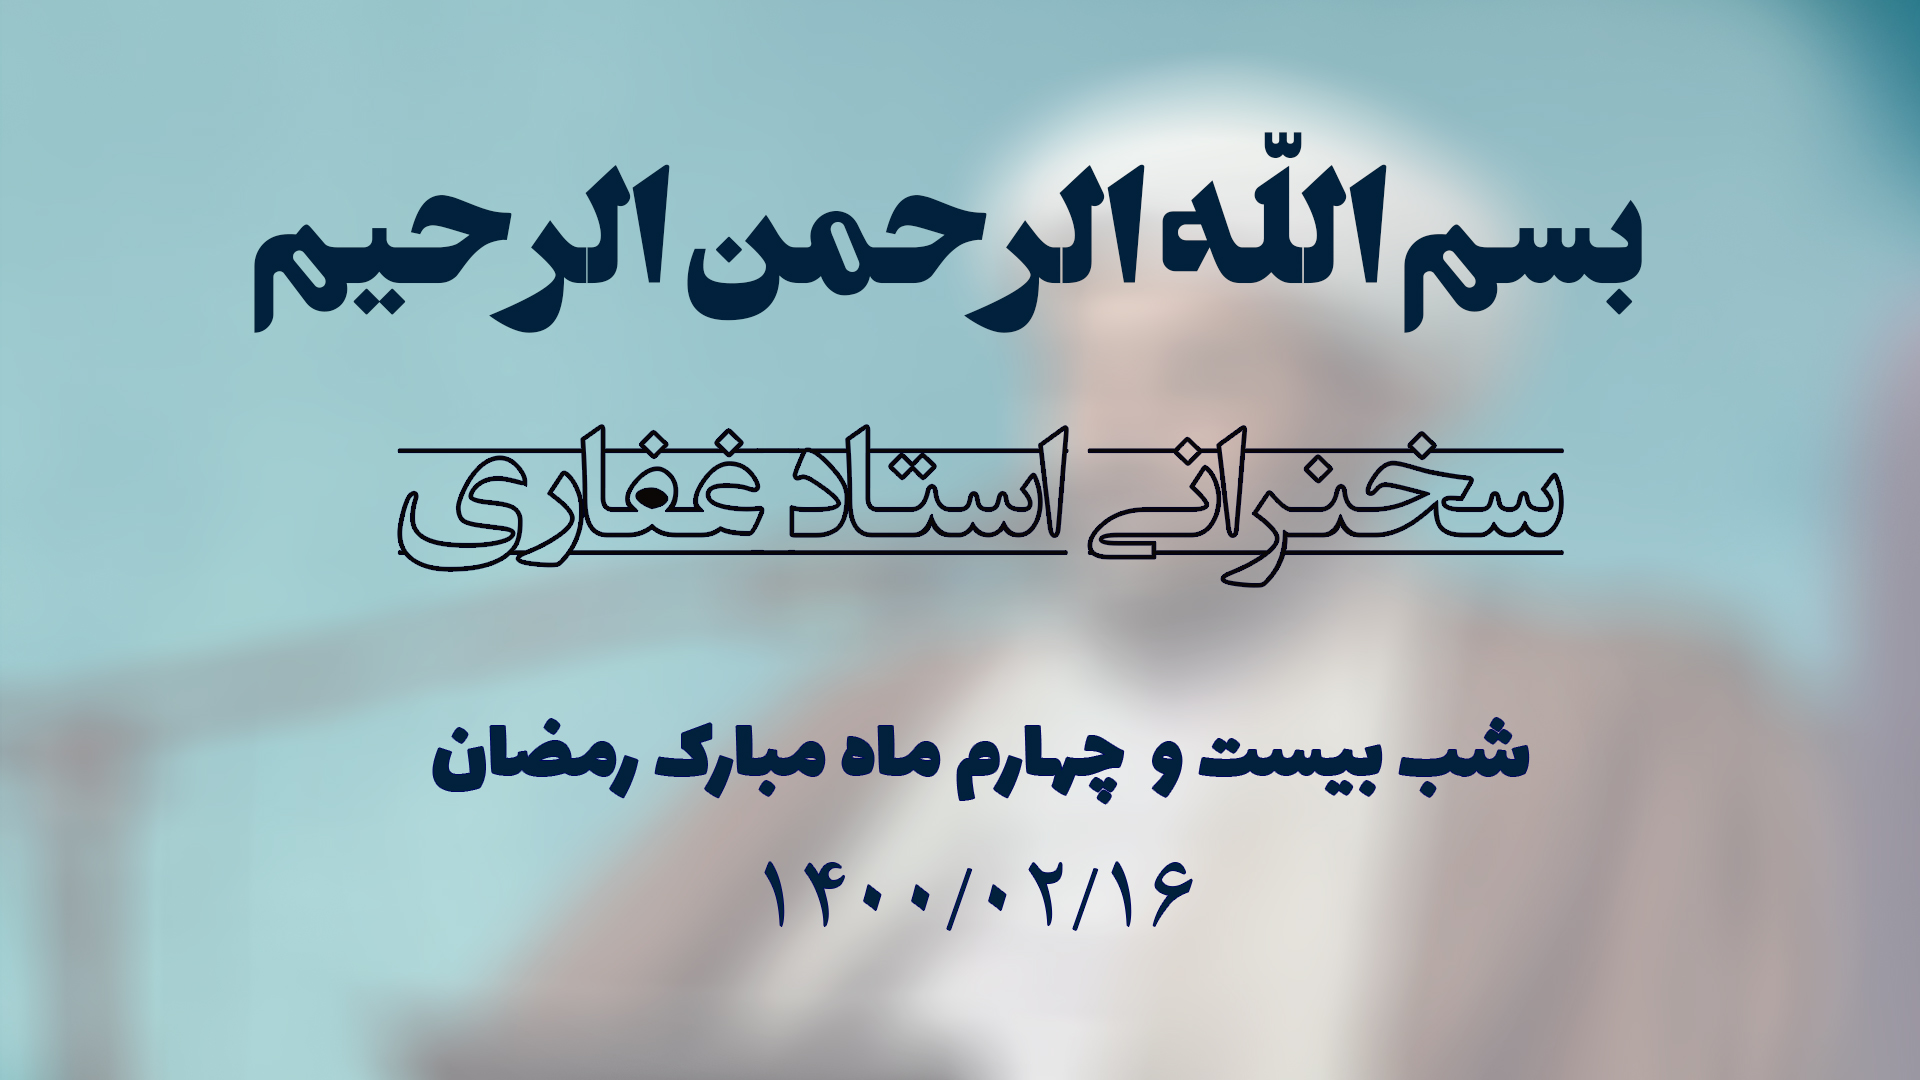 سخنرانی استاد غفاری ، شب بیست و چهارم ماه مبارک رمضان ۱۴۰۰/۰۲/۱6